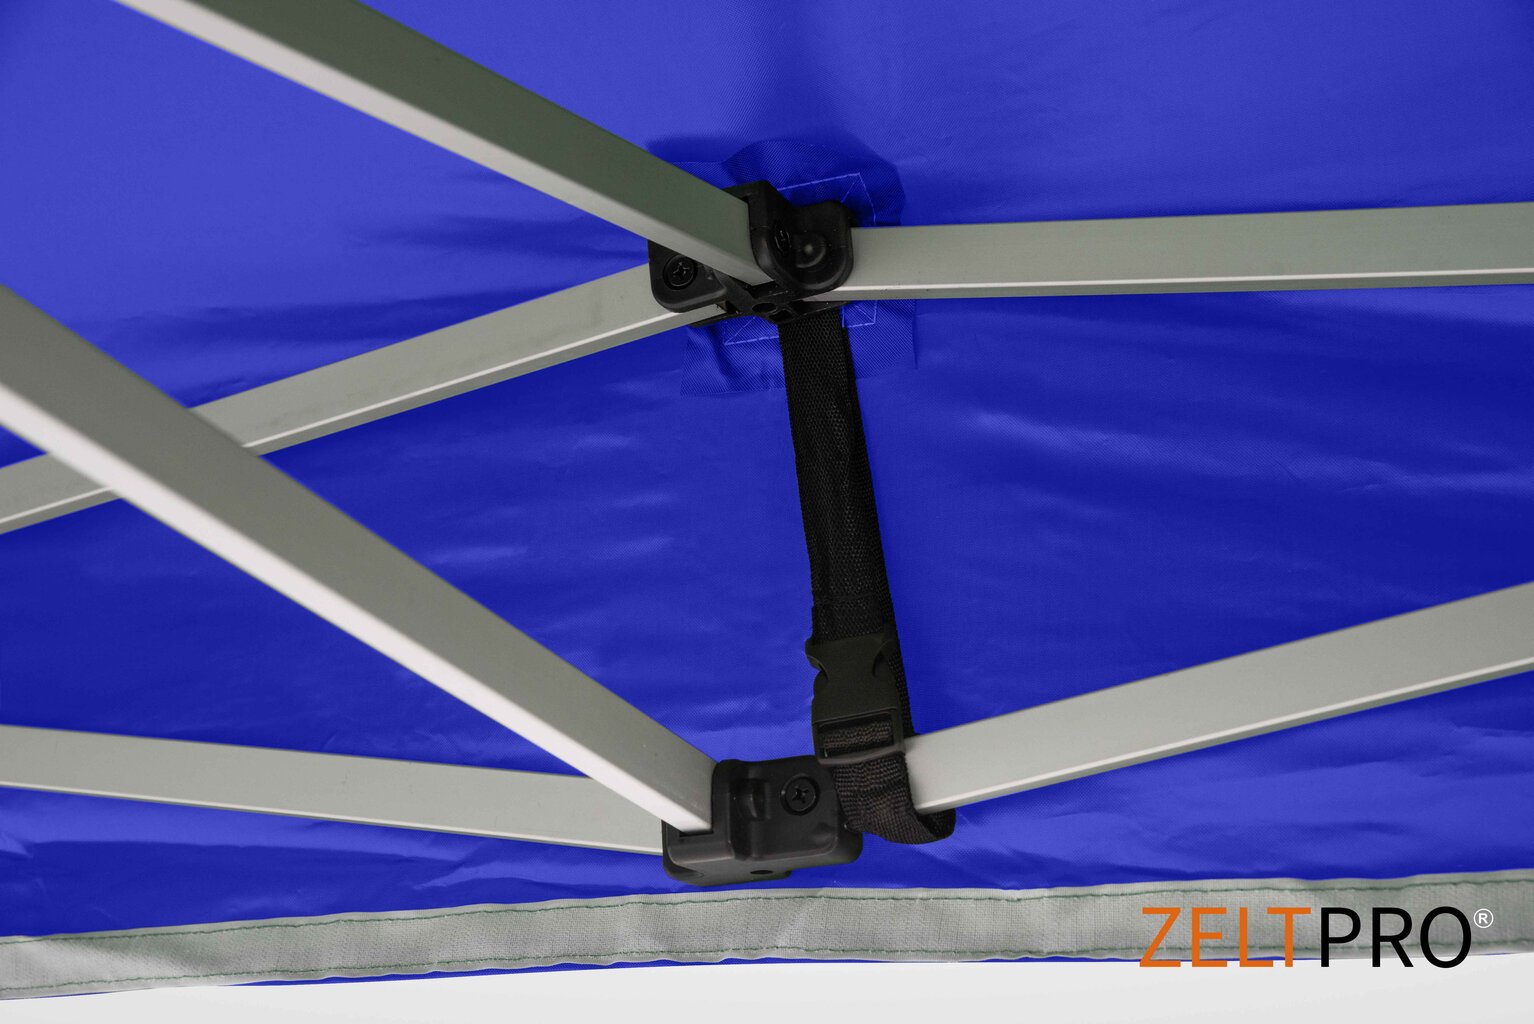 Prekybinė palapinė Zeltpro TITAN Mėlyna, 3x4,5 kaina ir informacija | Palapinės | pigu.lt